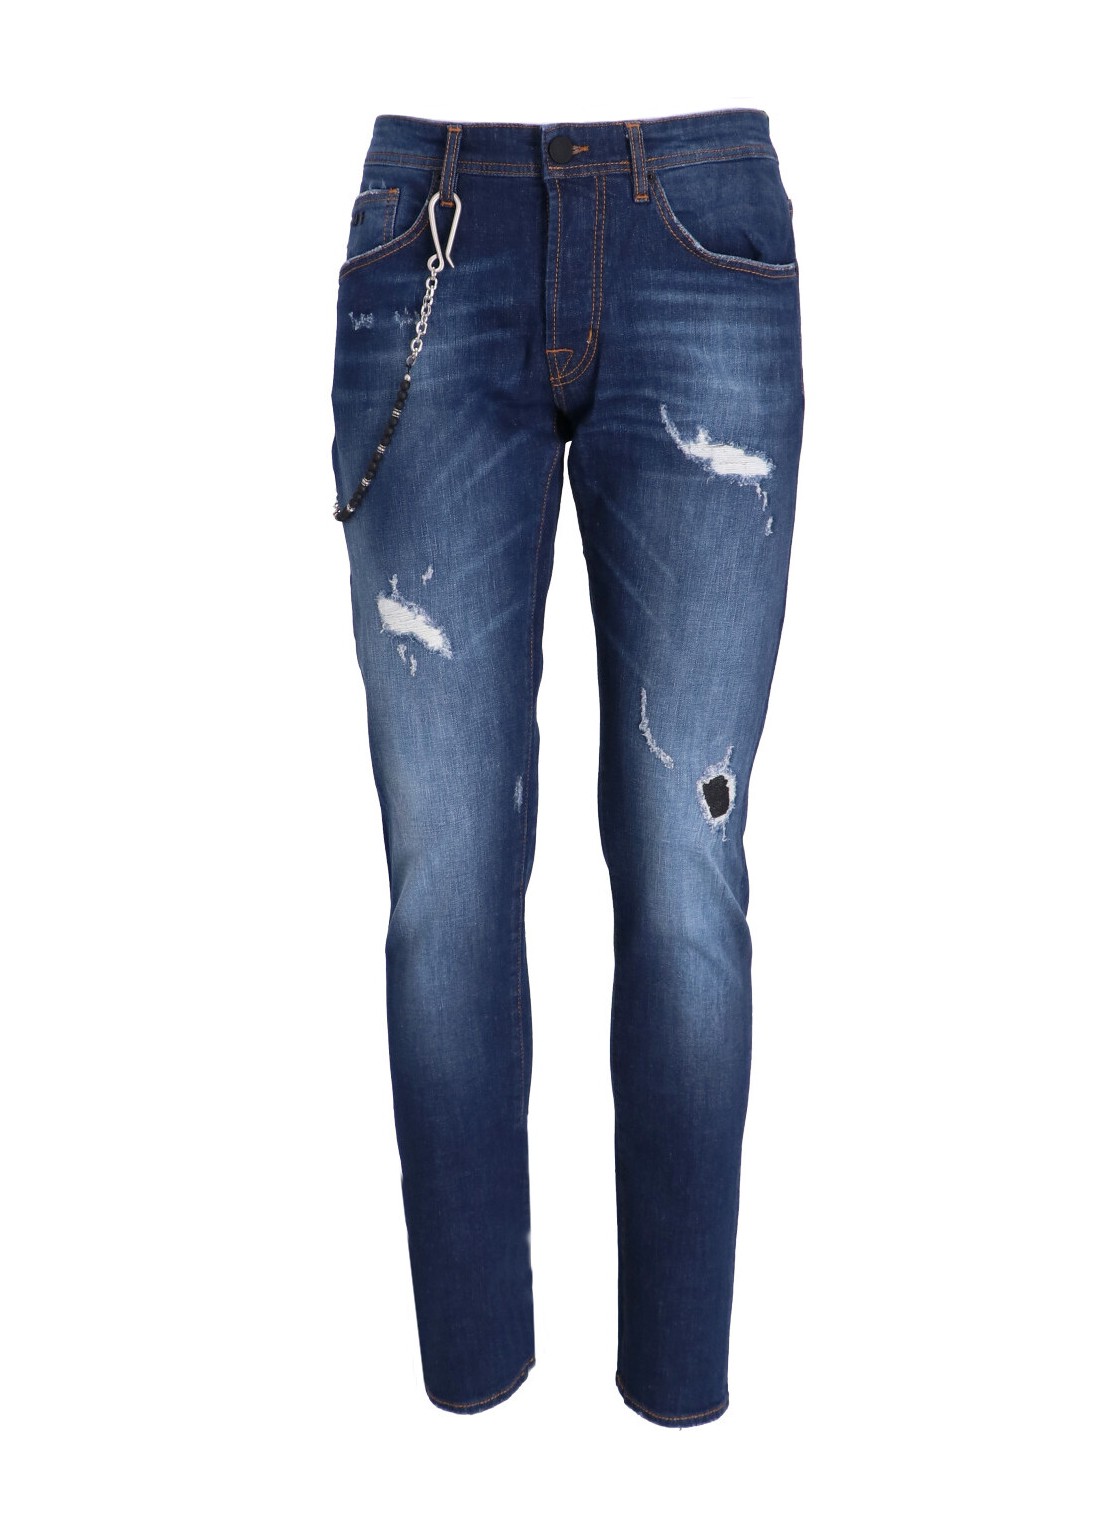 Pantalon jeans tramarossa denim man 1980 1980 23150 talla 33
 